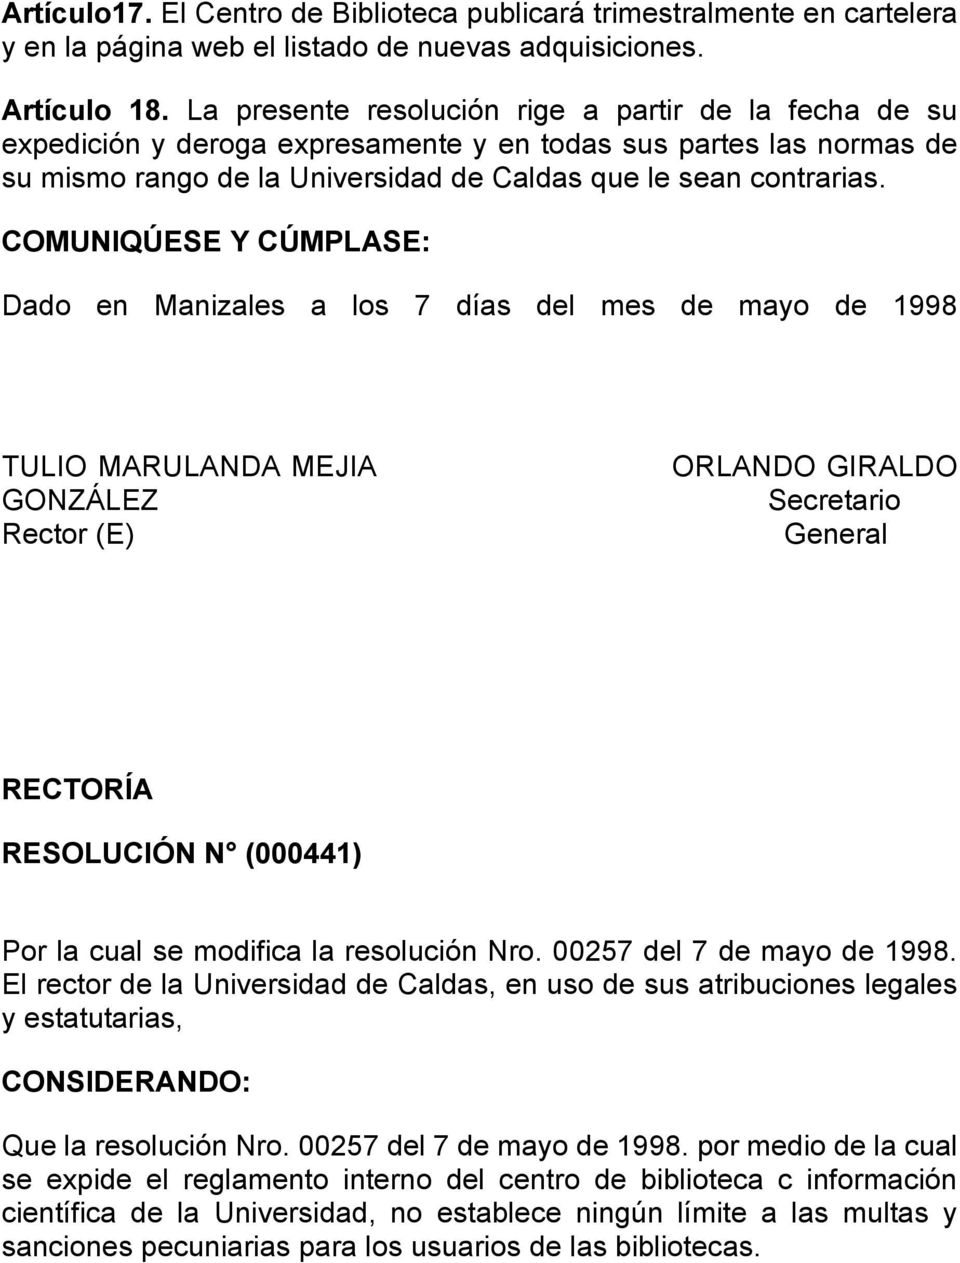 COMUNIQÚESE Y CÚMPLASE: Dado en Manizales a los 7 días del mes de mayo de 1998 TULIO MARULANDA MEJIA GONZÁLEZ Rector (E) ORLANDO GIRALDO Secretario General RECTORÍA RESOLUCIÓN N (000441) Por la cual